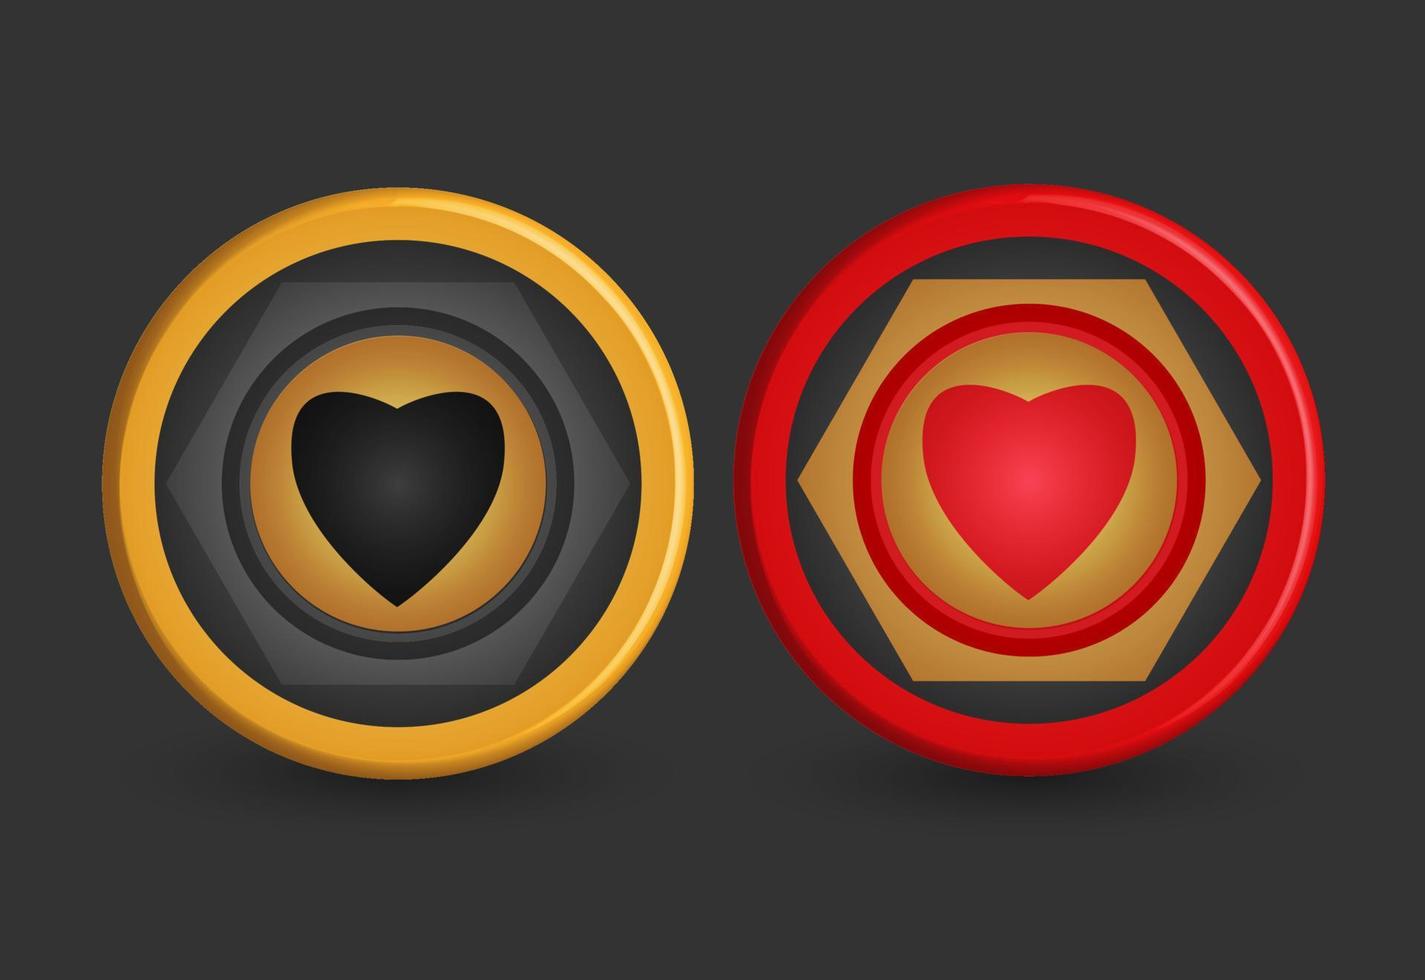 fichas de póquer doradas y rojas, con símbolo del corazón, elementos de diseño de juegos, ilustración vectorial 3d, vector